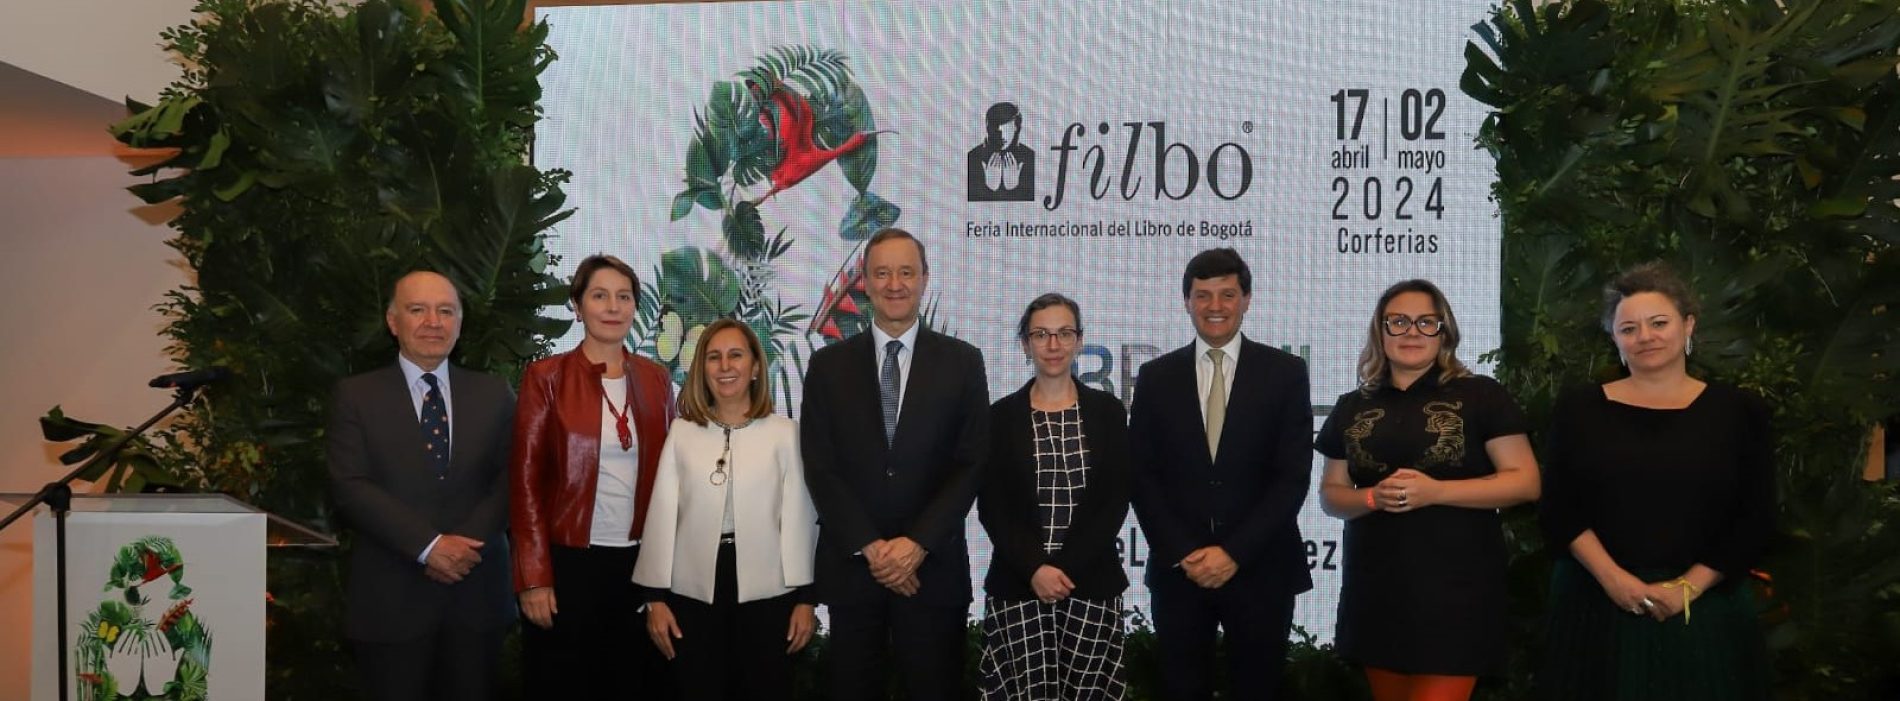 La FILBo anuncia su programación para la edición 2024, con Brasil como País Invitado de Honor